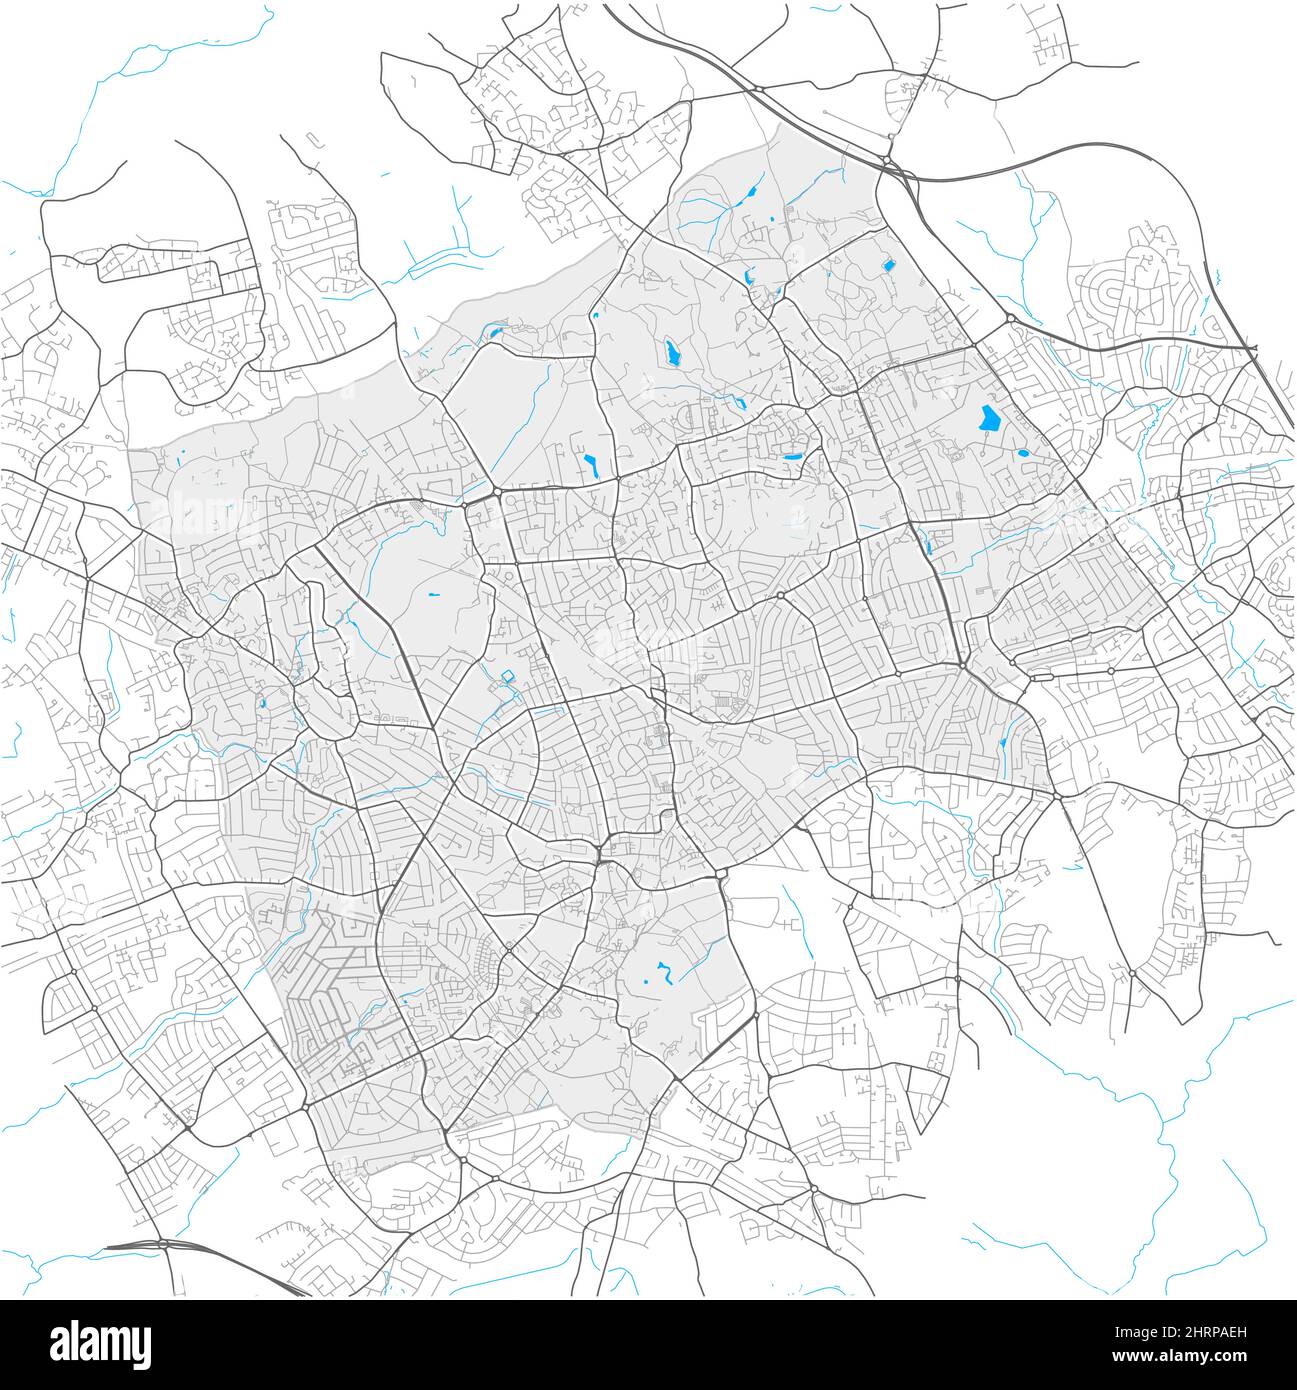 Harrow, Greater London, Großbritannien, Vektorkarte mit hoher Detailtiefe und Stadtgrenzen sowie bearbeitbaren Pfaden. Weiße Umrisse für Hauptstraßen. Viele kleinere pa Stock Vektor